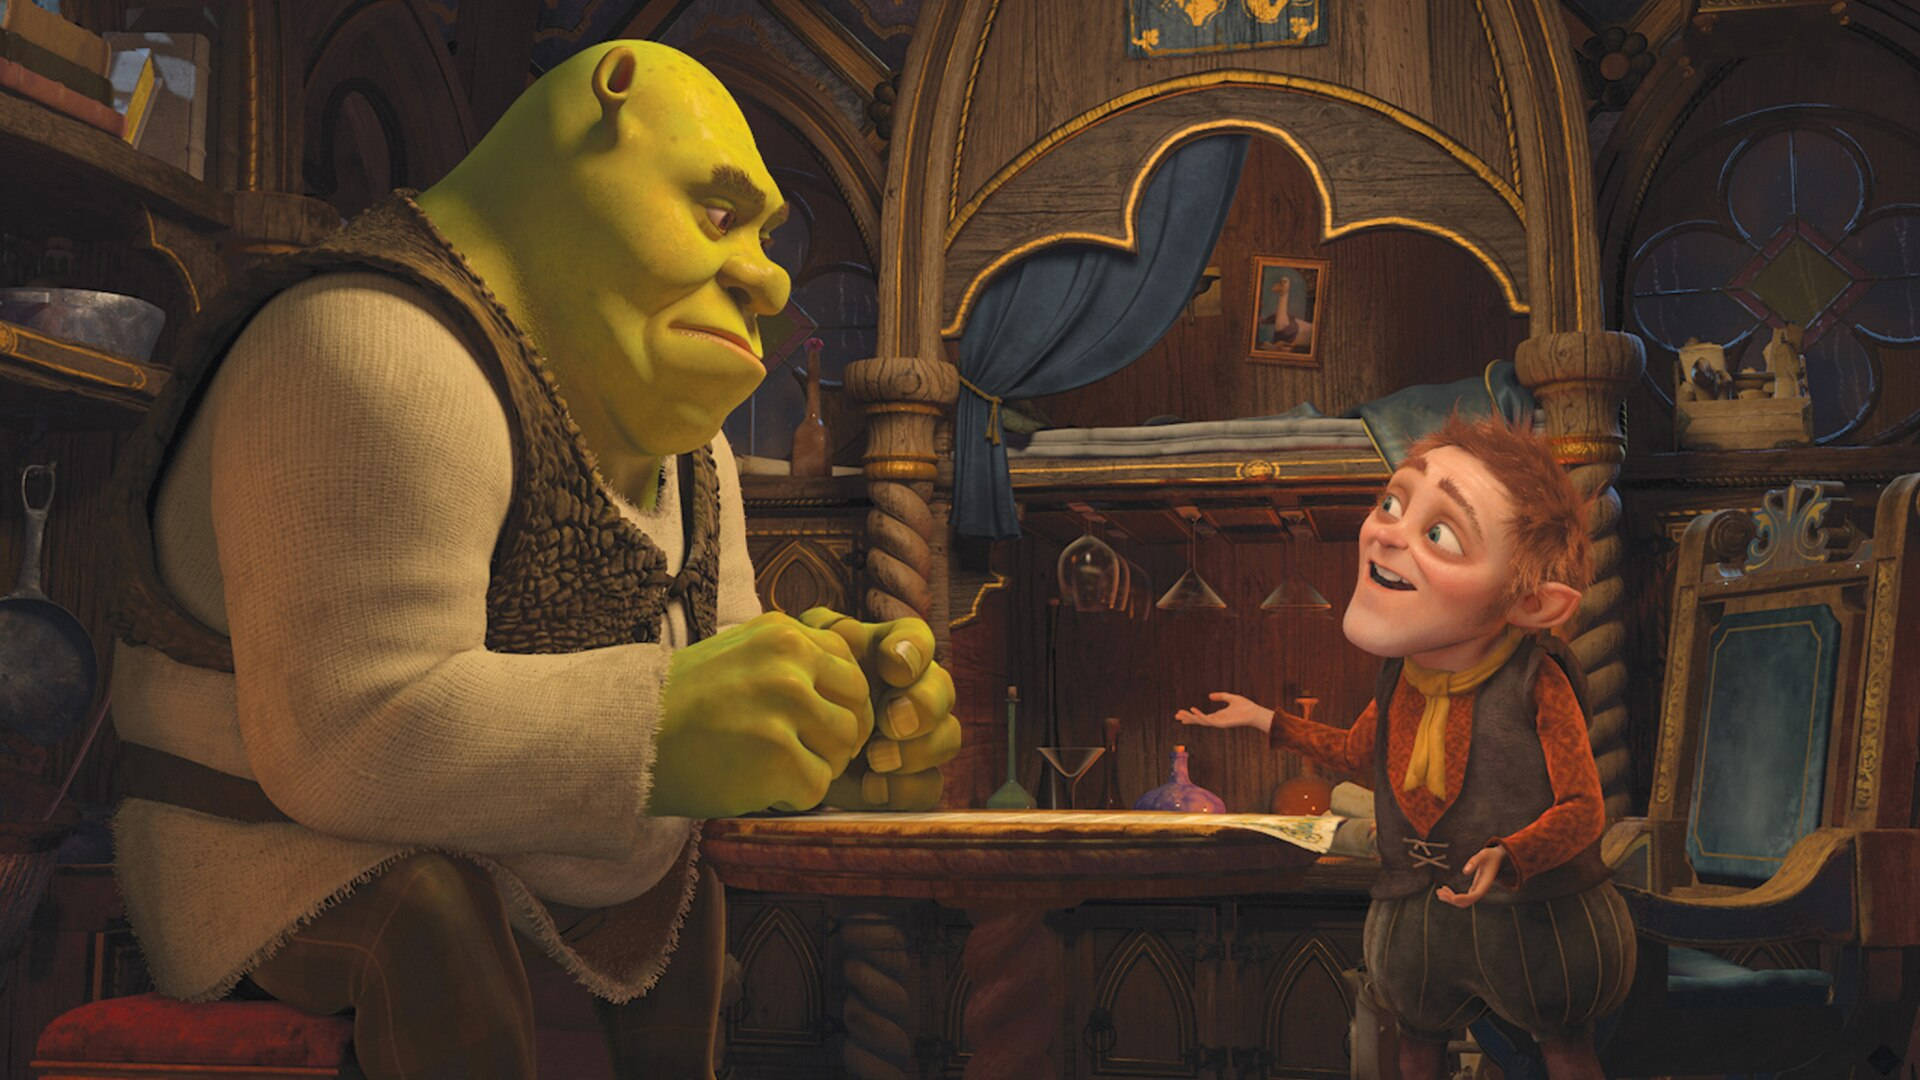 "Rumpelstiltskin arguing with Shrek in Shrek 2" Wallpaper